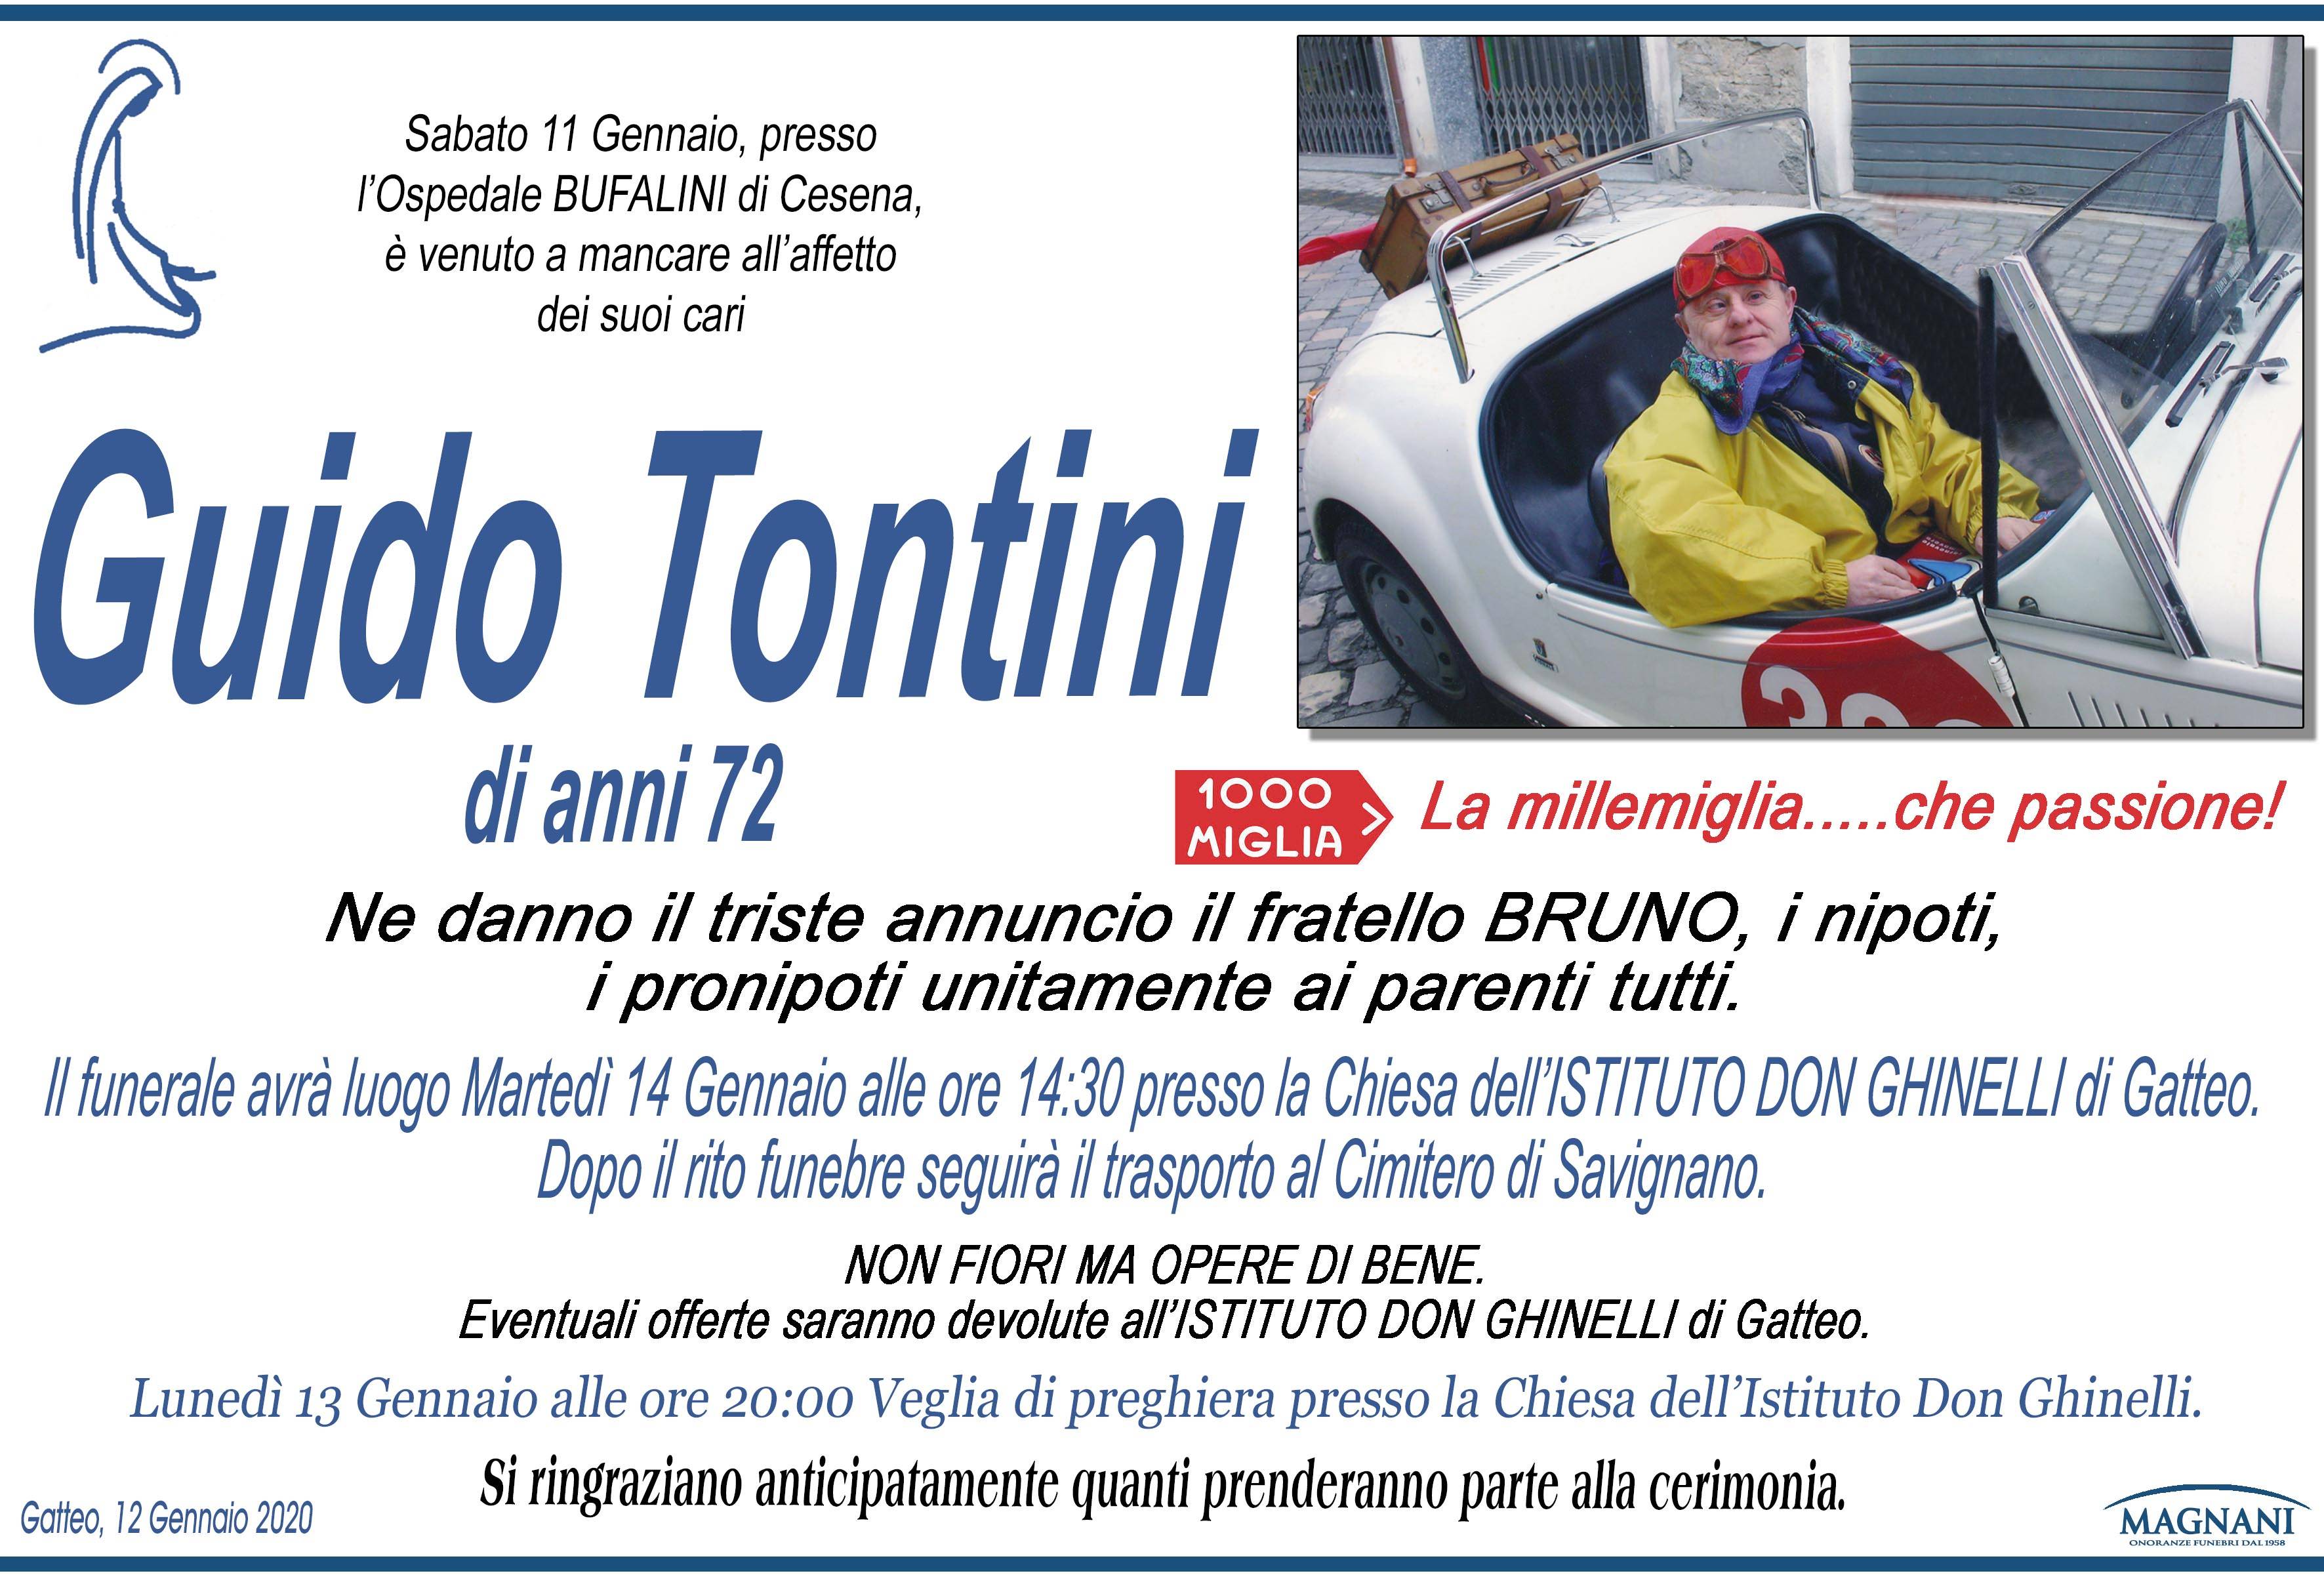 Guido Tontini